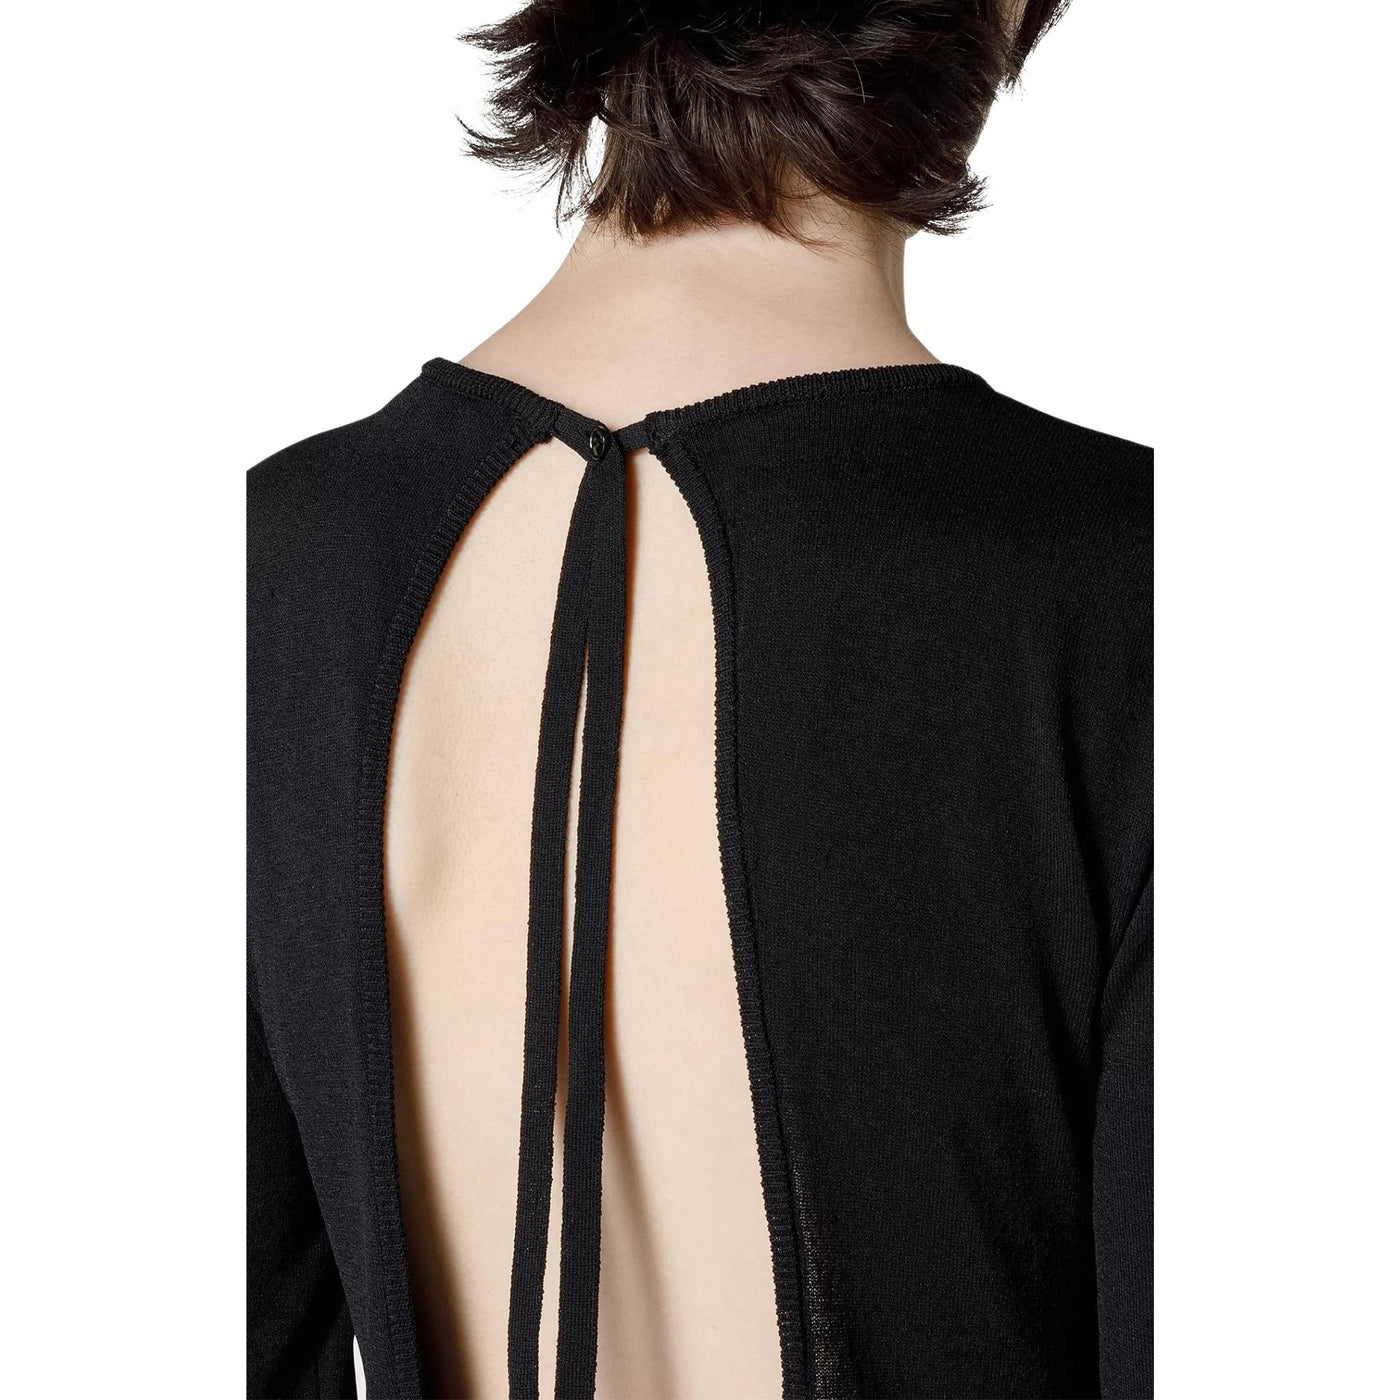 abito donna seventy scollo sulla schiena nero dettaglio